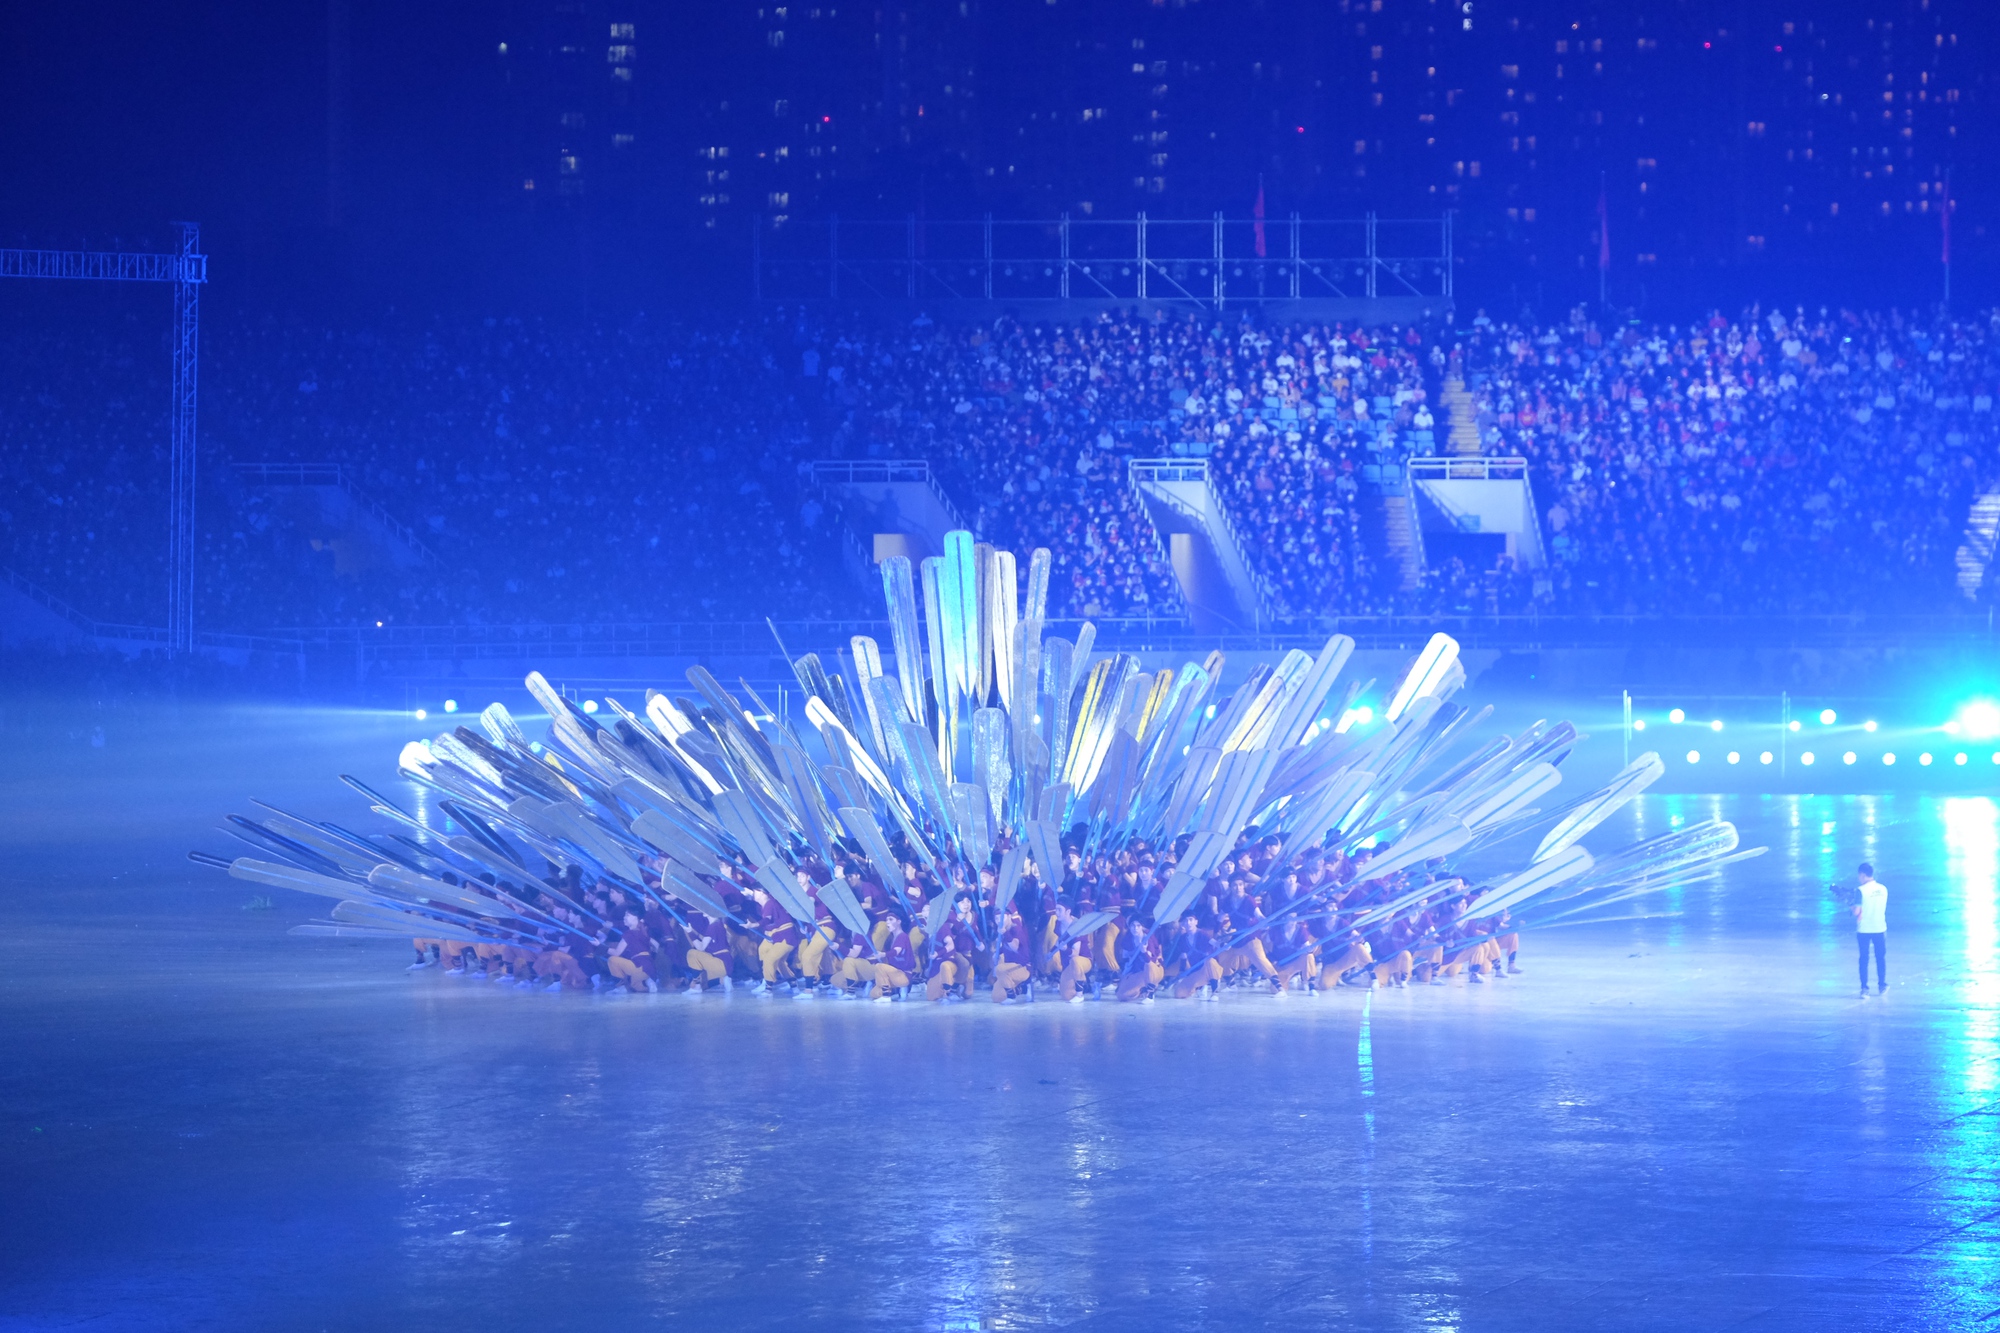 Những khoảnh khắc ấn tượng nhất lễ khai mạc SEA Games 31: Pháo hoa thắp sáng chảo lửa Mỹ Đình, những nụ cười tươi ánh lên niềm tự hào dân tộc đã lâu rồi mới thấy! - Ảnh 4.